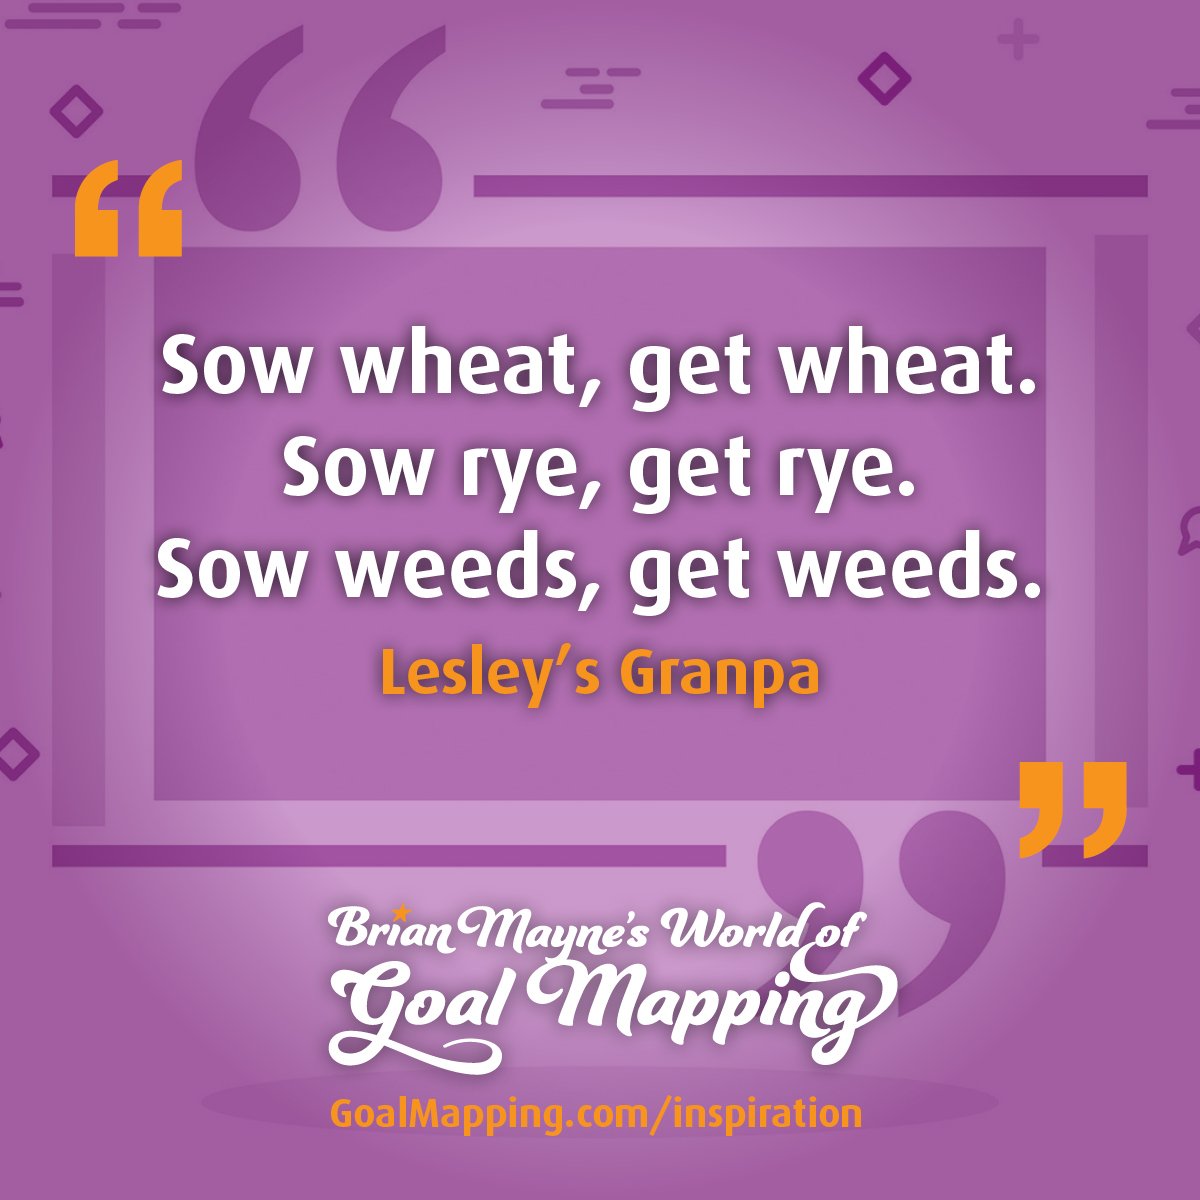 "Sow wheat, get wheat. Sow rye, get rye. Sow weeds, get weeds." Lesley’s Granpa